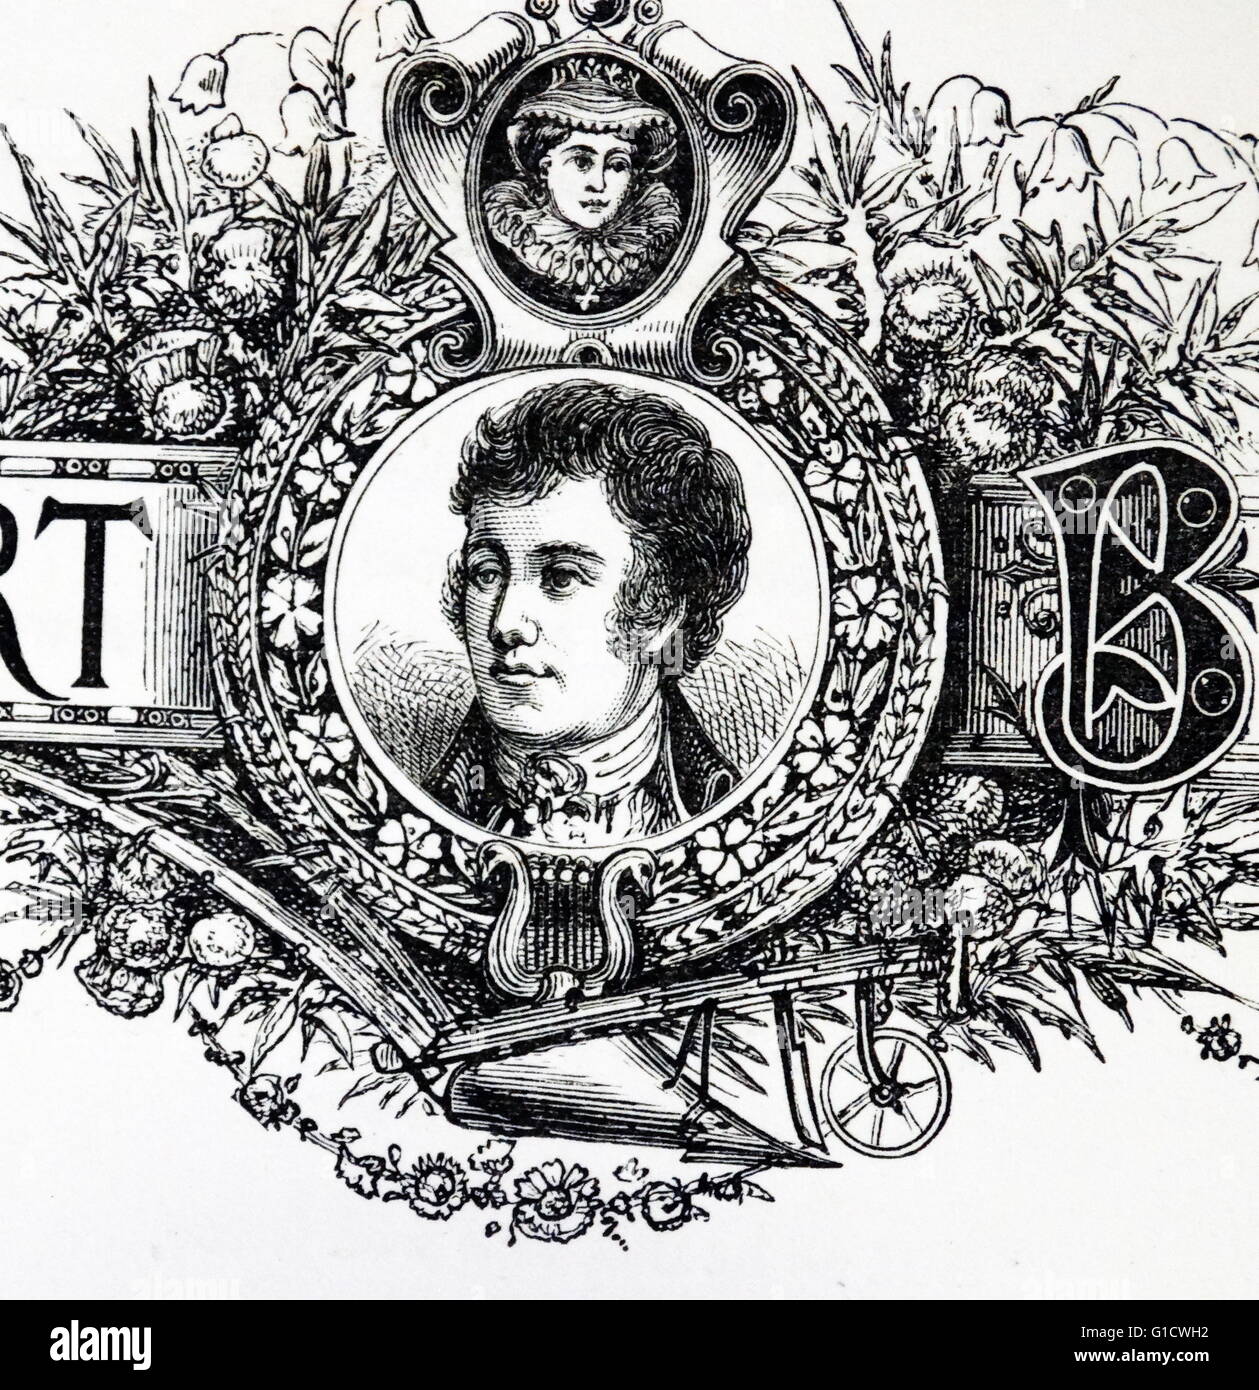 Gravierte Portrait von Robert Burns (1759-1796), schottischer Dichter und Lyriker. Vom 18. Jahrhundert Stockfoto